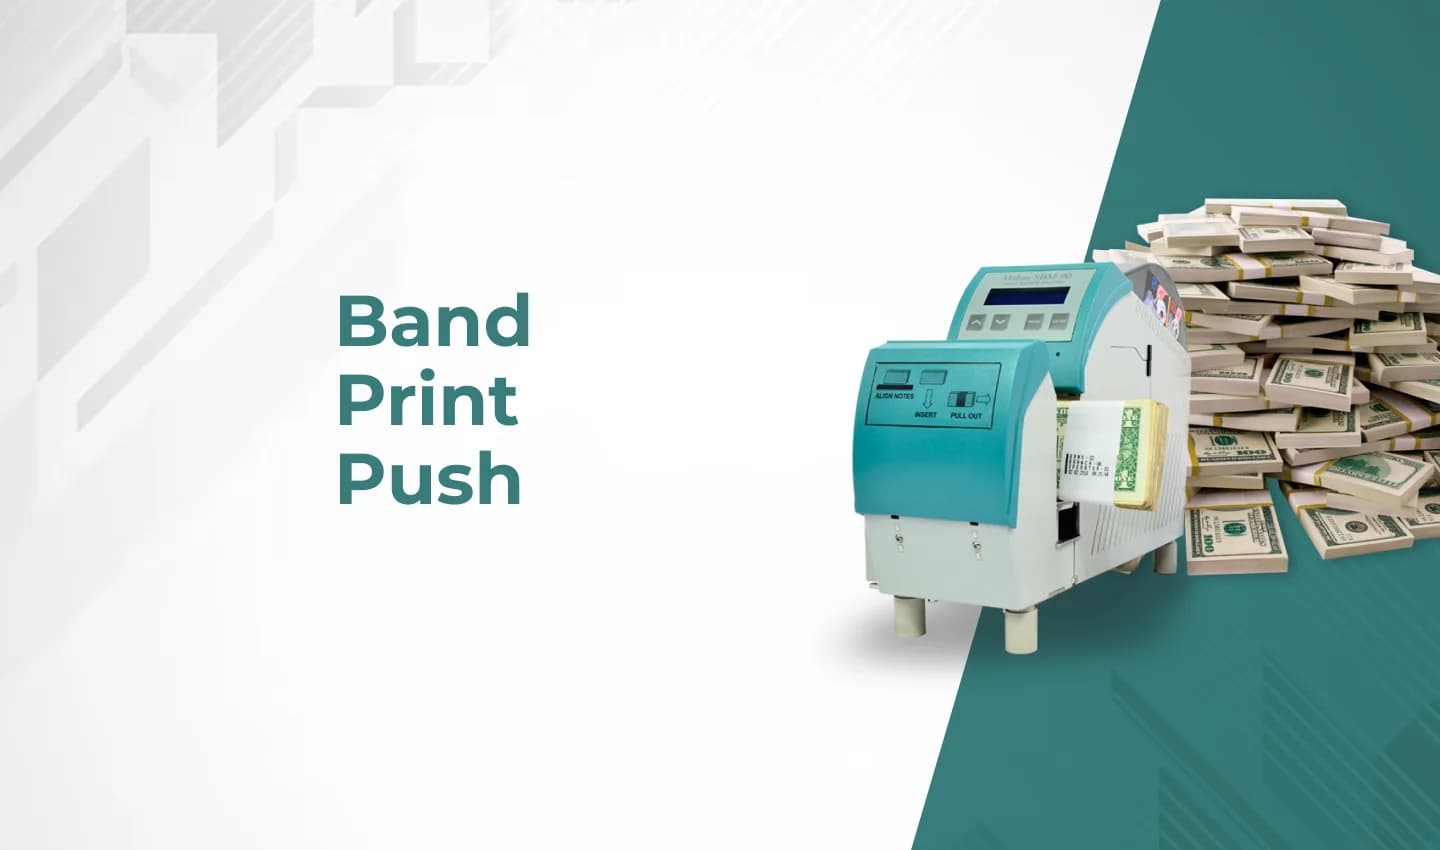 Band Print Push